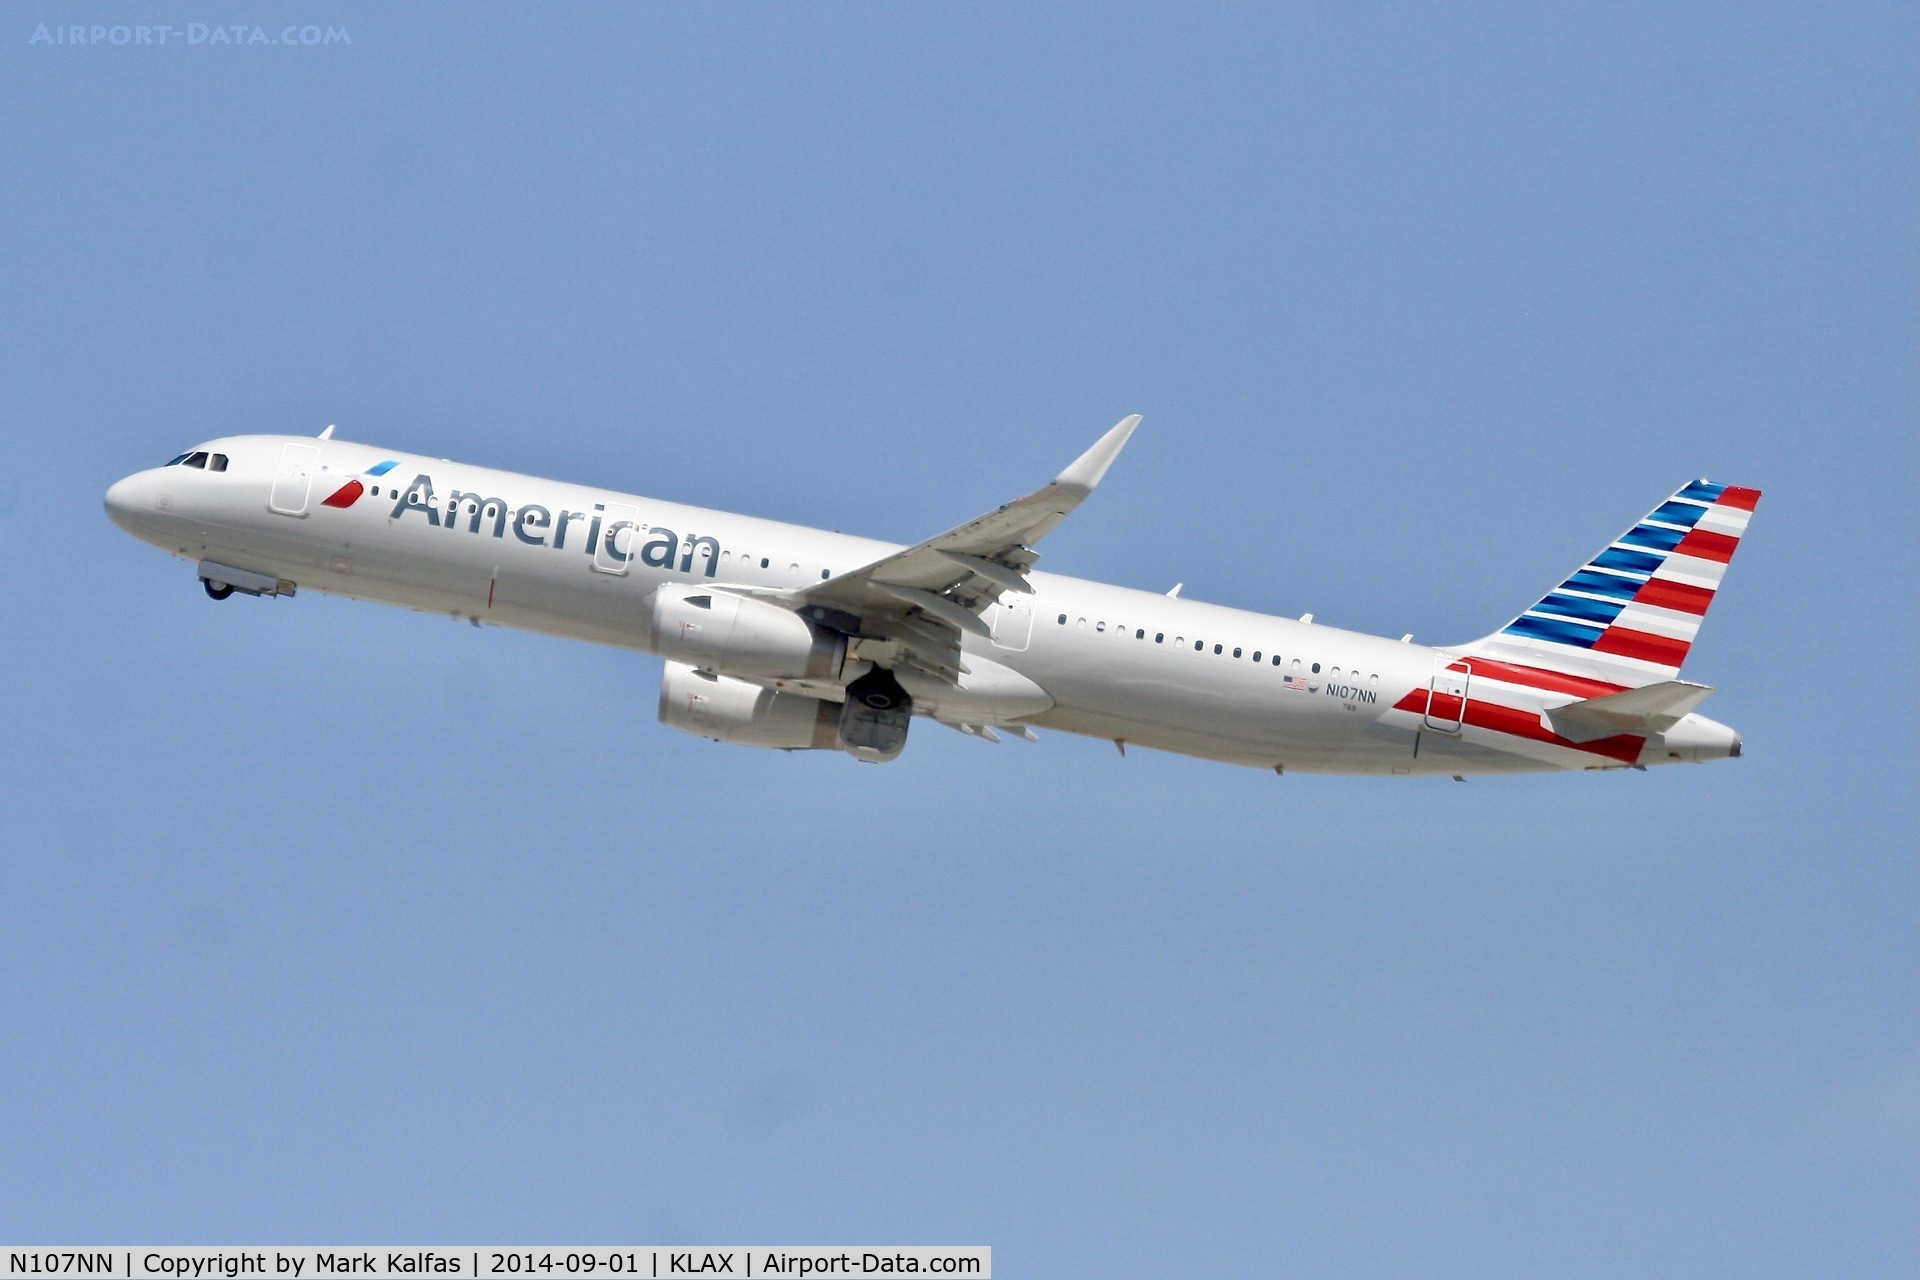 N107NN, 2013 Airbus A321-231 C/N 5938, American Airbus A321-231, N107NN departing LAX